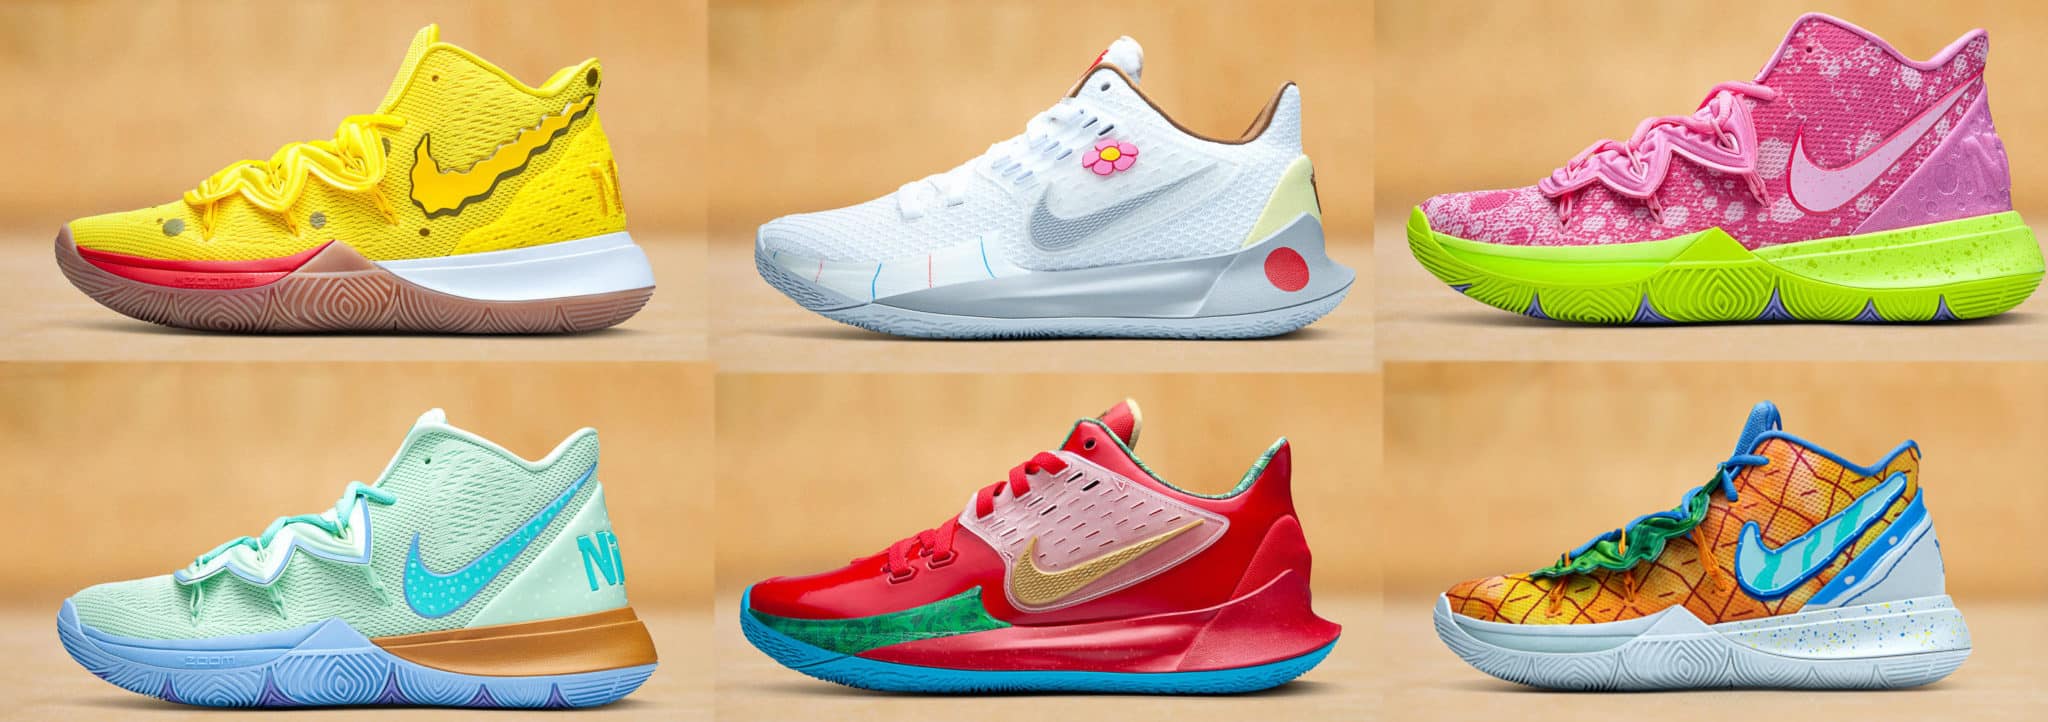 Nike Kyrie 5 Spongebob Squarepants Shoes &#8211; Nike Collab